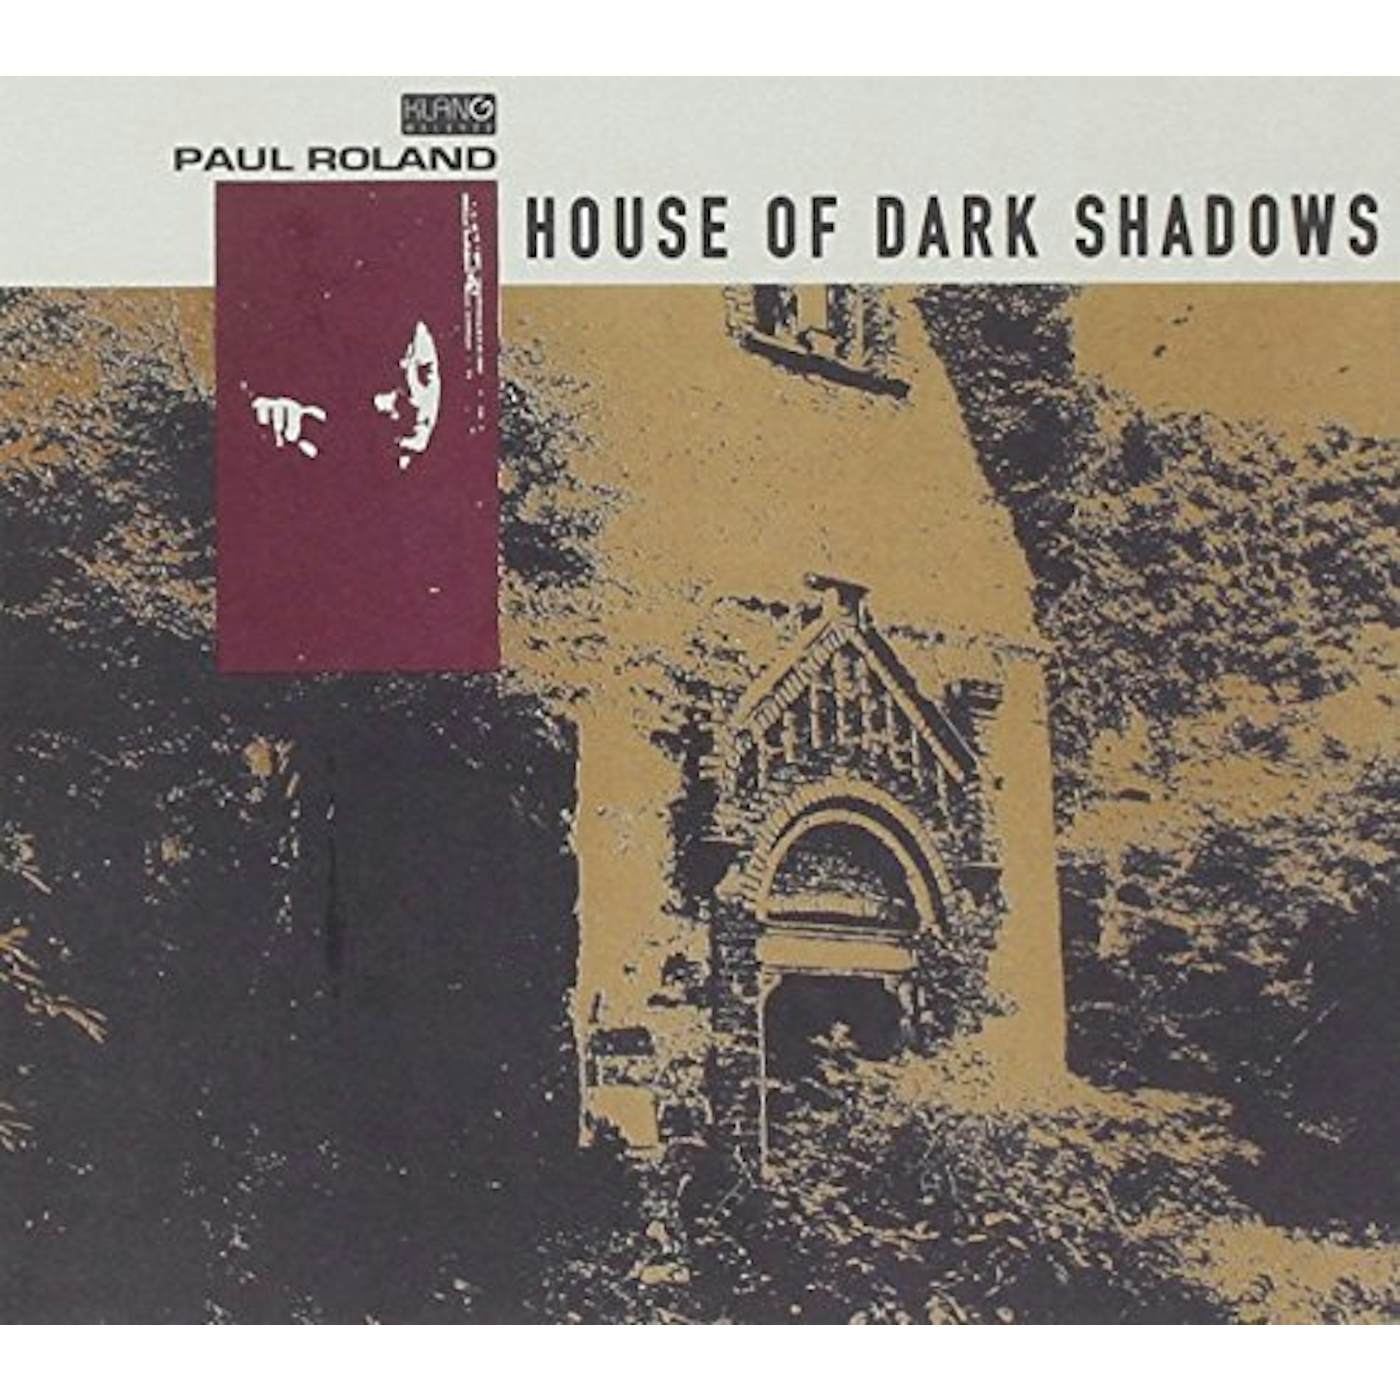 Paul Roland HOUSE OF DARK SHADOWS CD